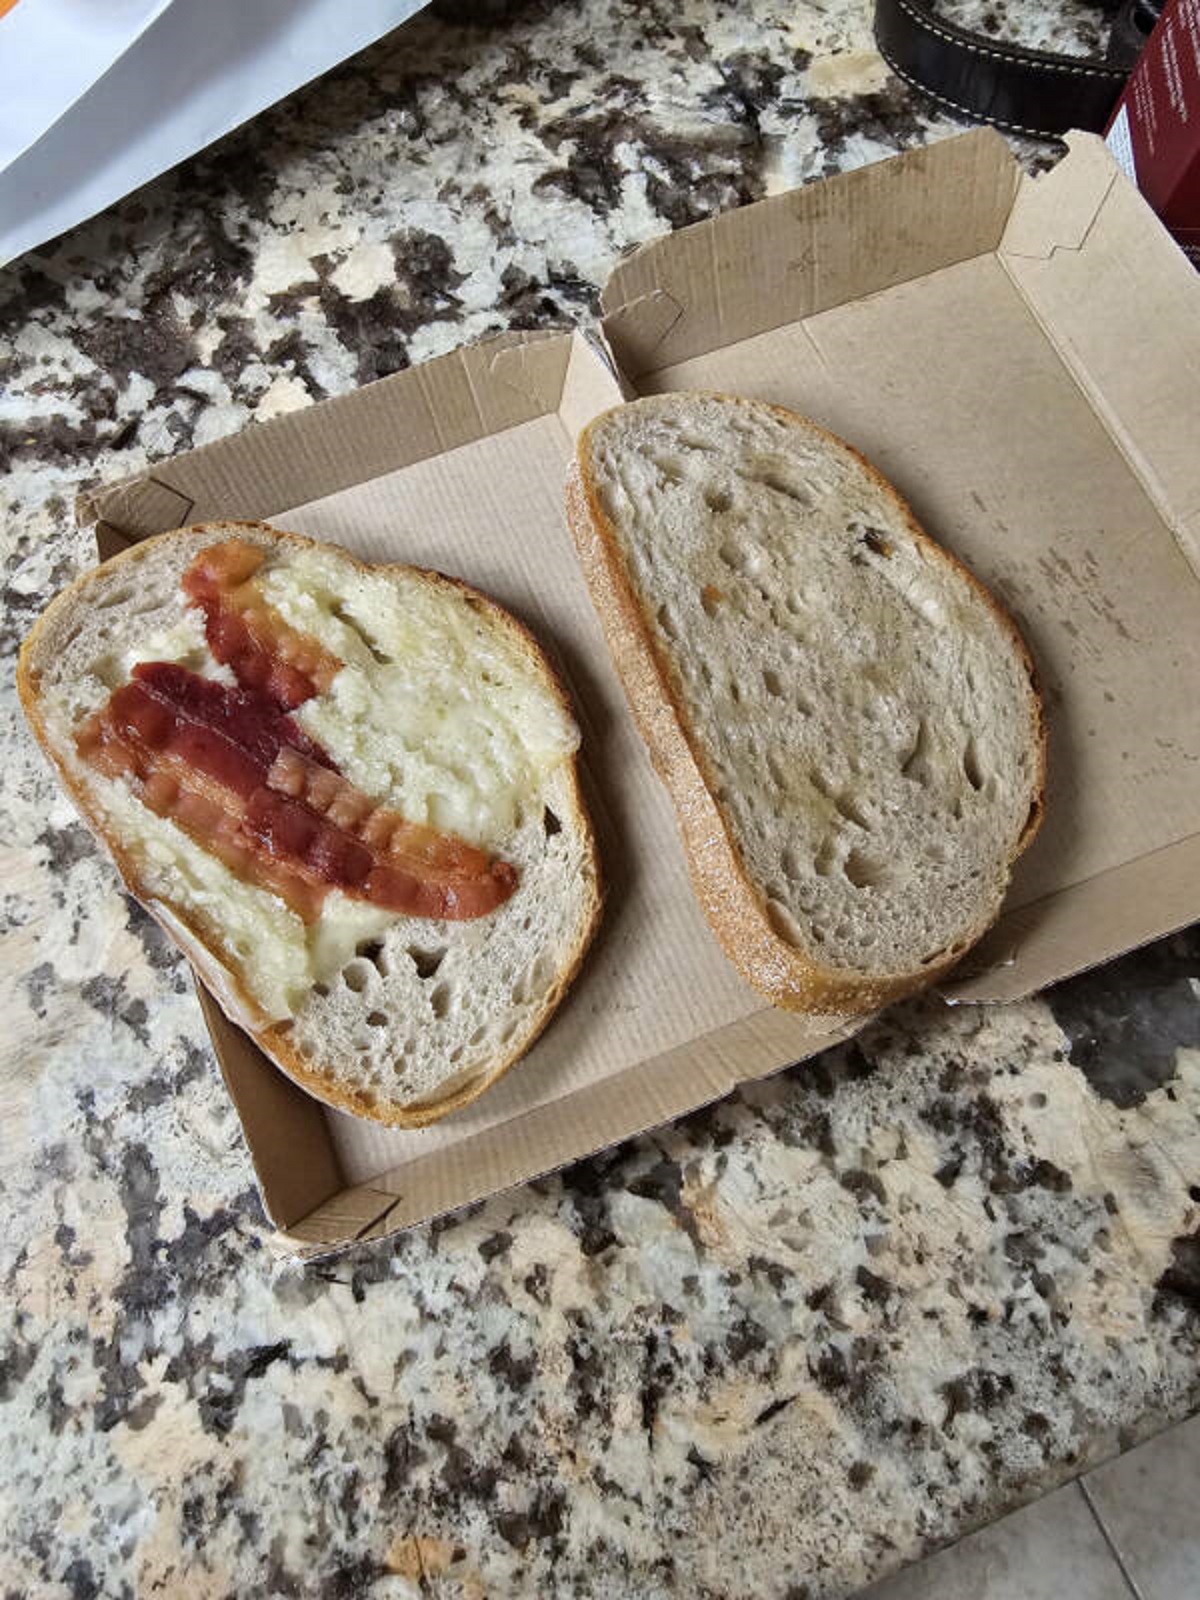 “This breakfast sandwich was 6$”